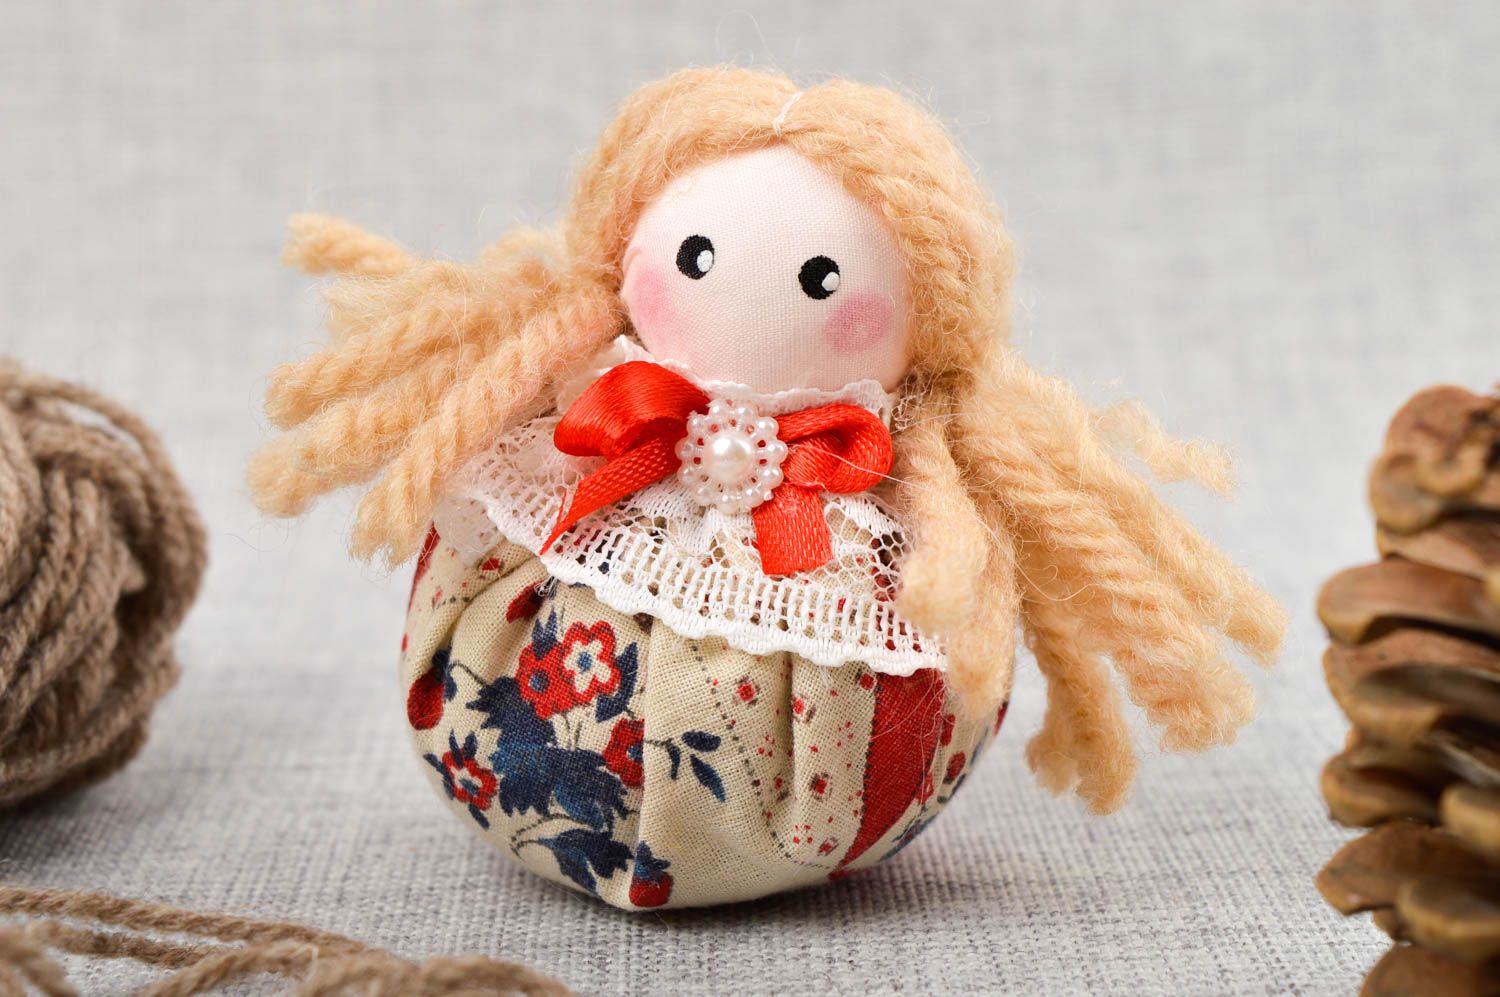 Кукла ручной работы кукла из ткани маленькая авторская кукла с запахом лаванды фото 1